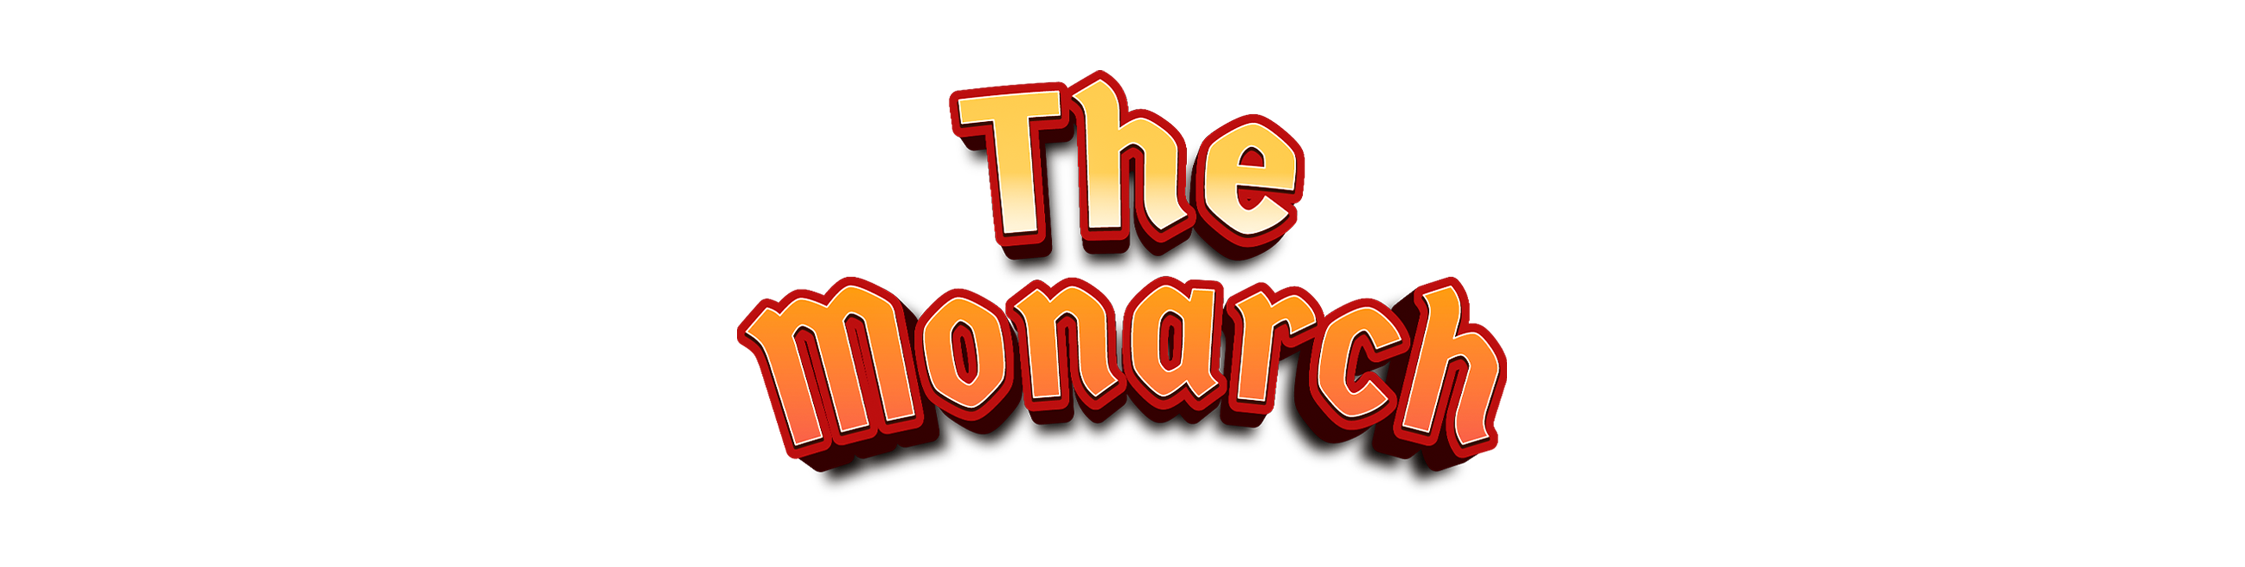 The Monarch - Demo